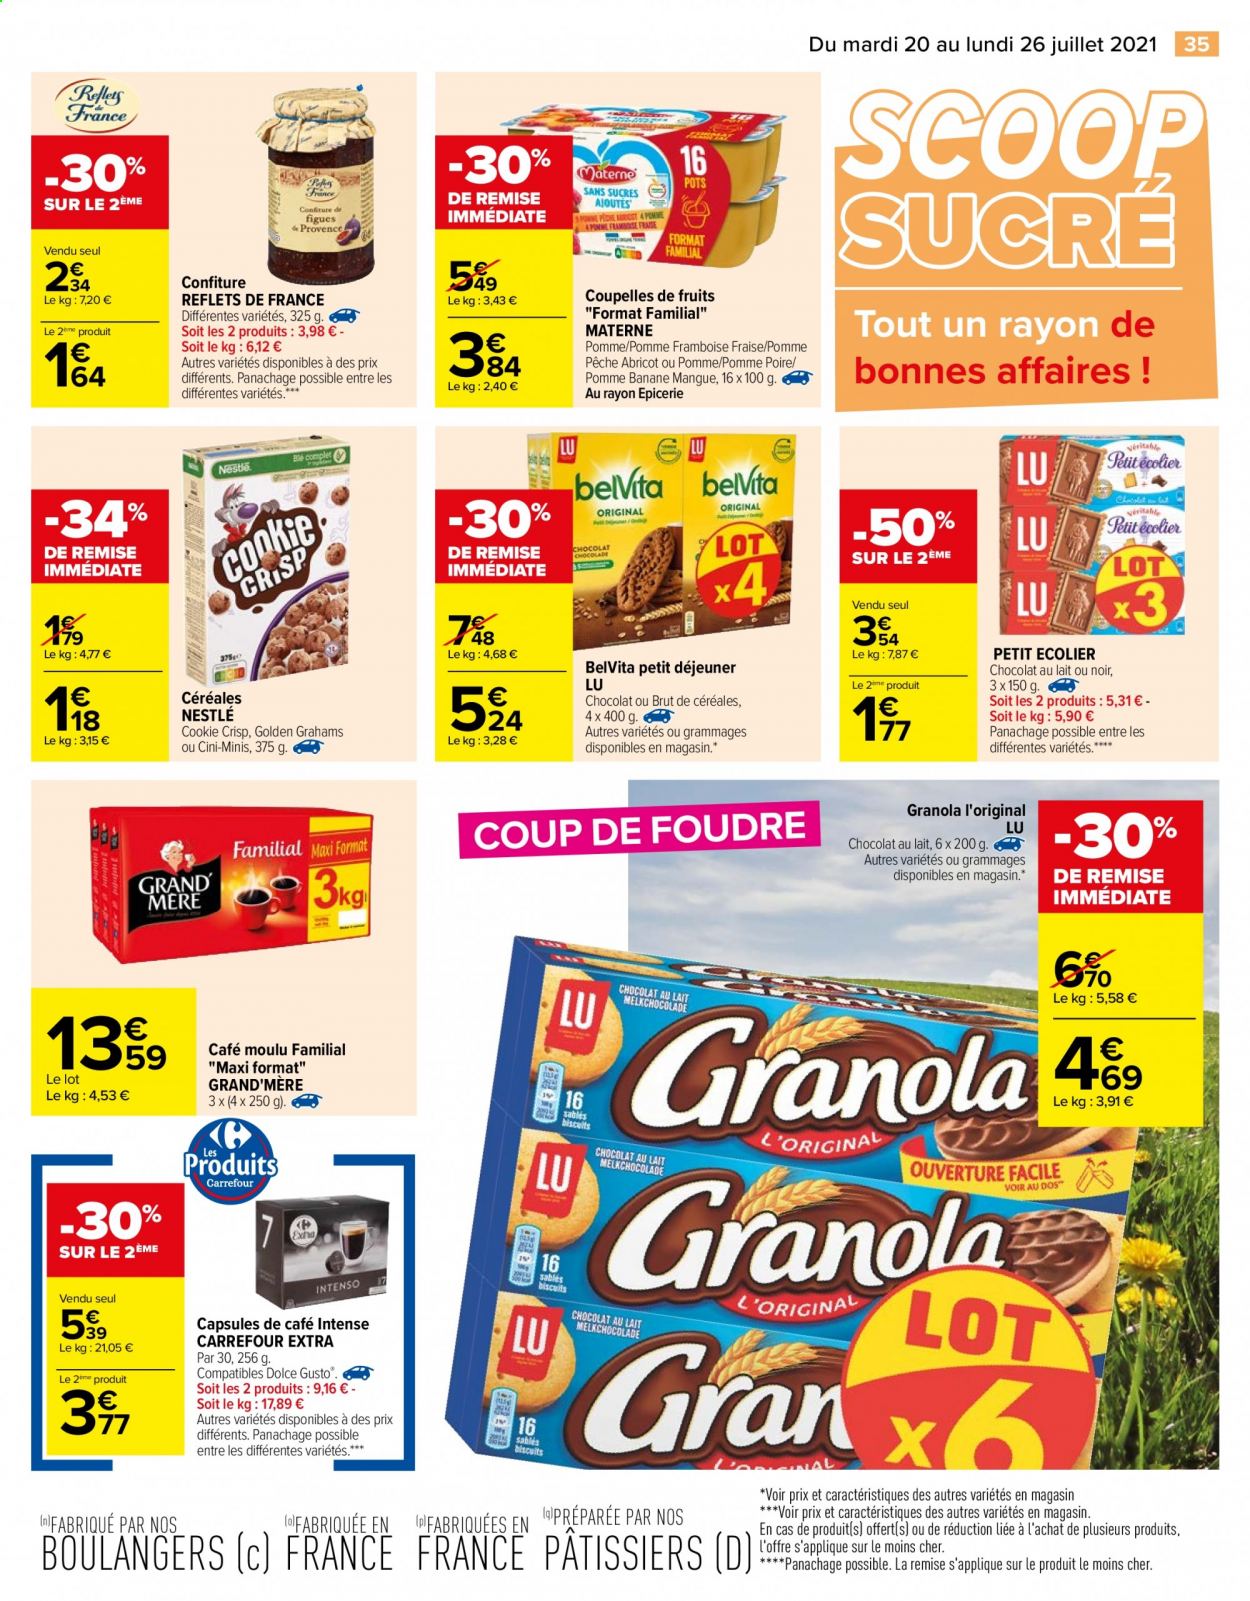 thumbnail - Catalogue Carrefour Hypermarchés - 20/07/2021 - 26/07/2021 - Produits soldés - bananes, Nestlé, biscuits, granola, sablés, LU, sucre, confiture, café moulu, café capsules. Page 39.